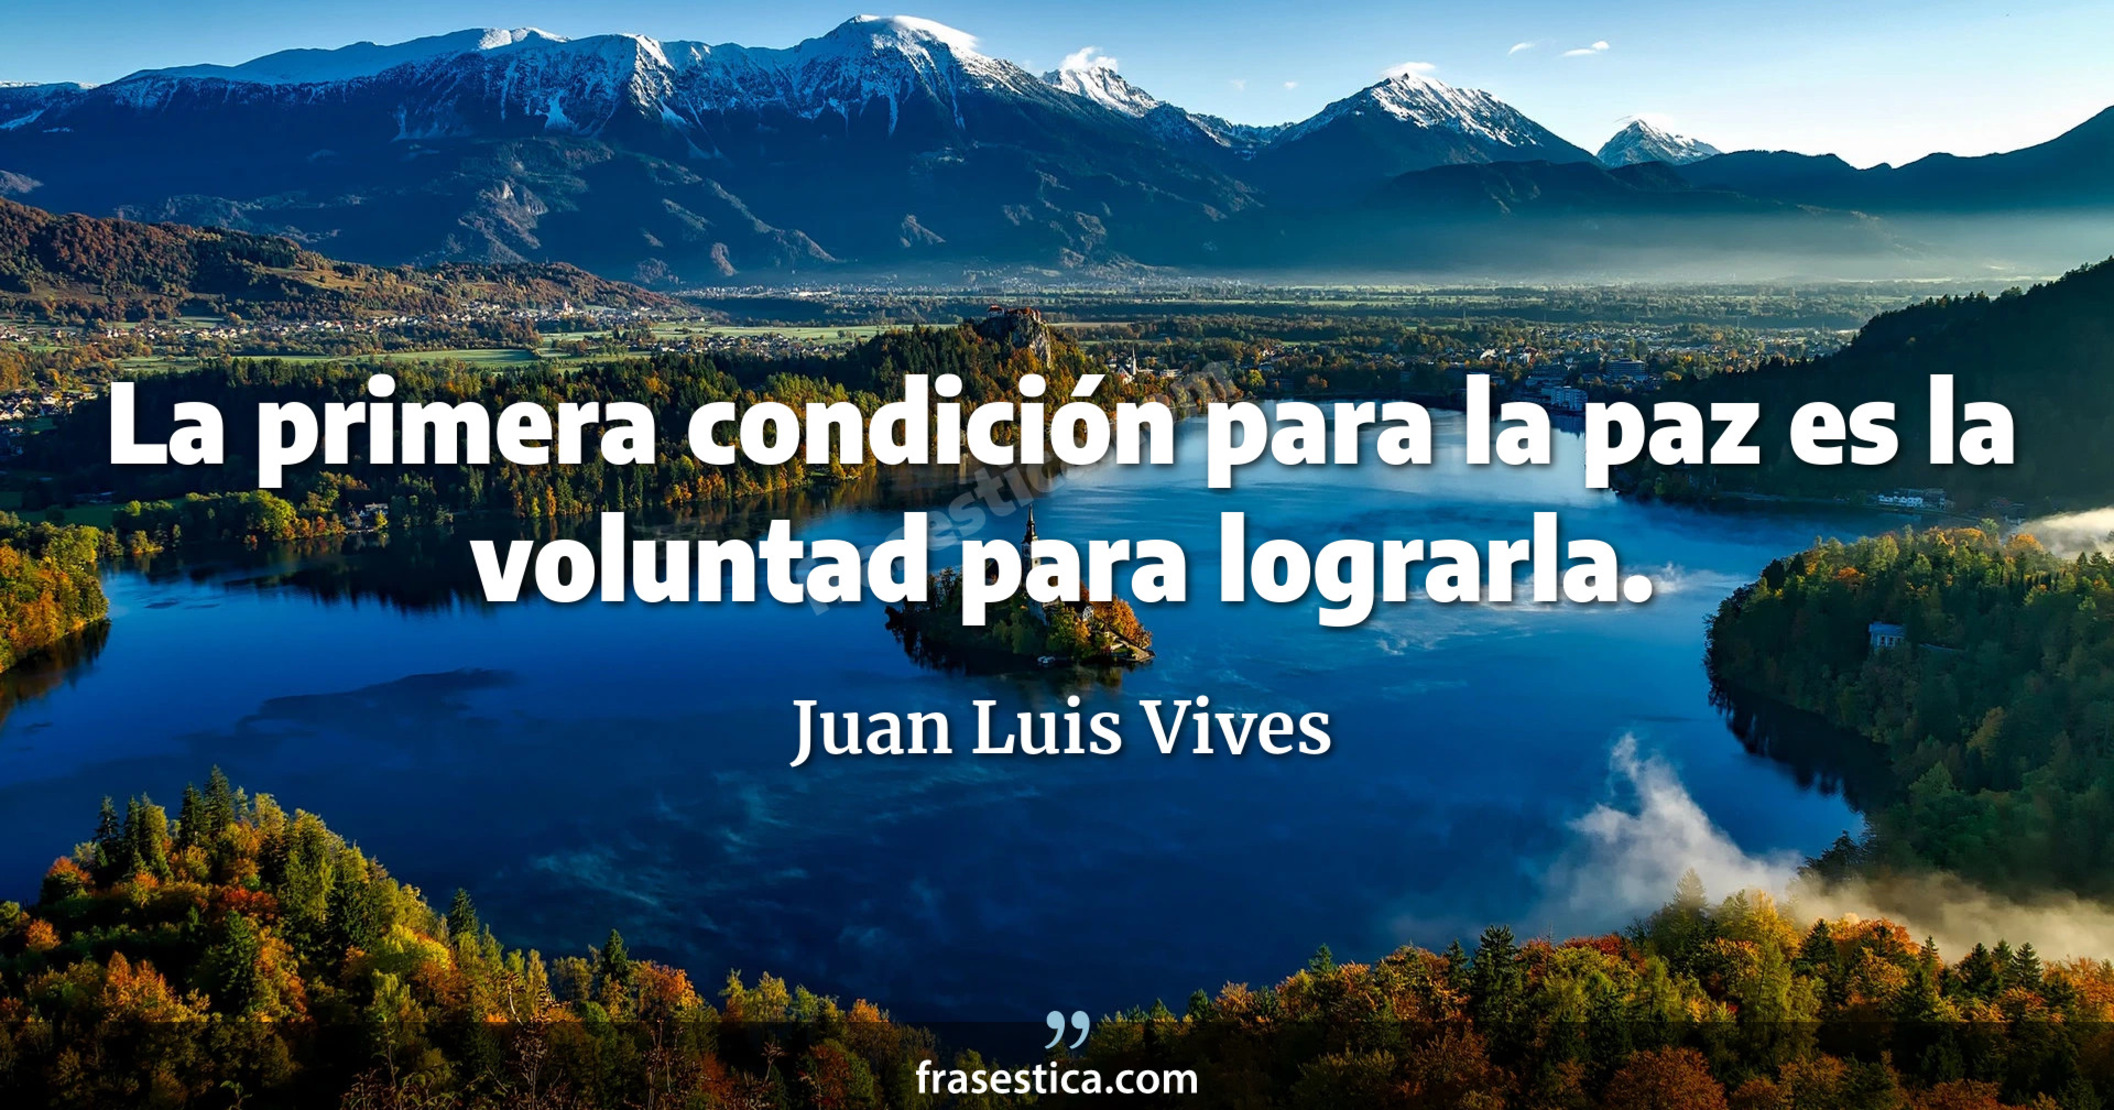 La primera condición para la paz es la voluntad para lograrla. - Juan Luis Vives